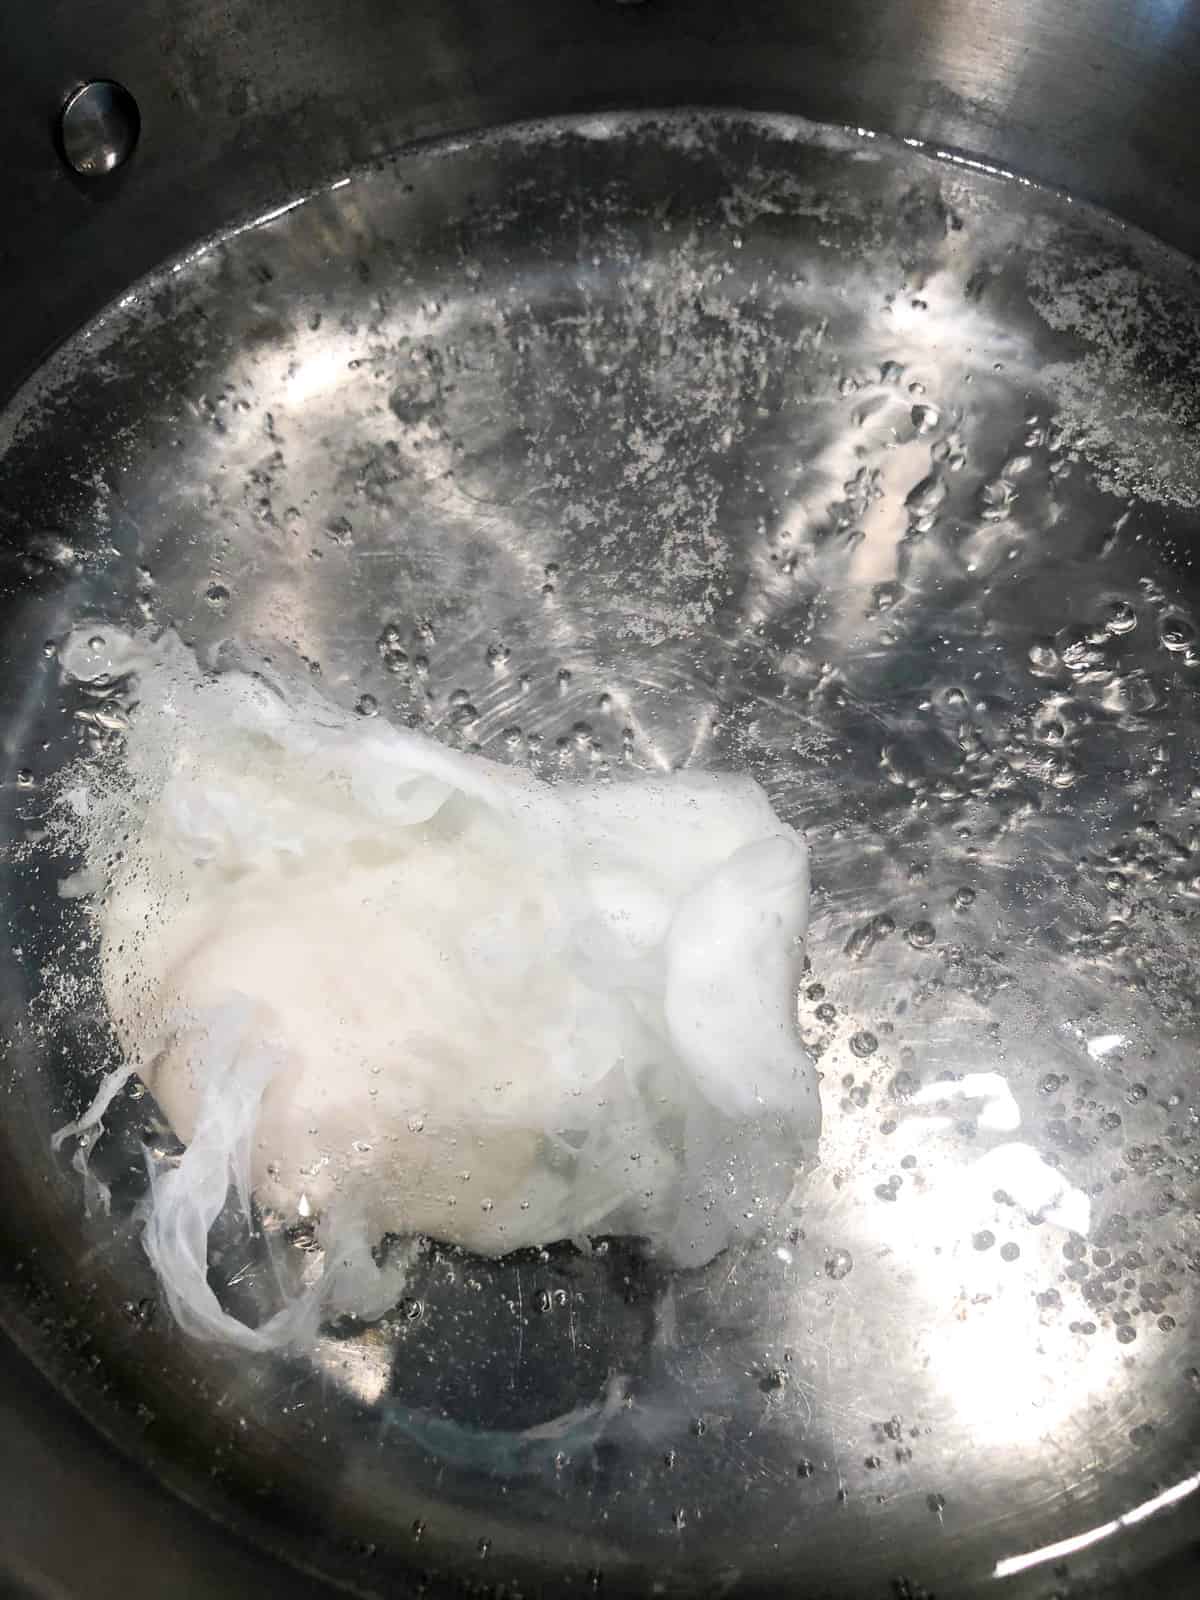 Boiling egg